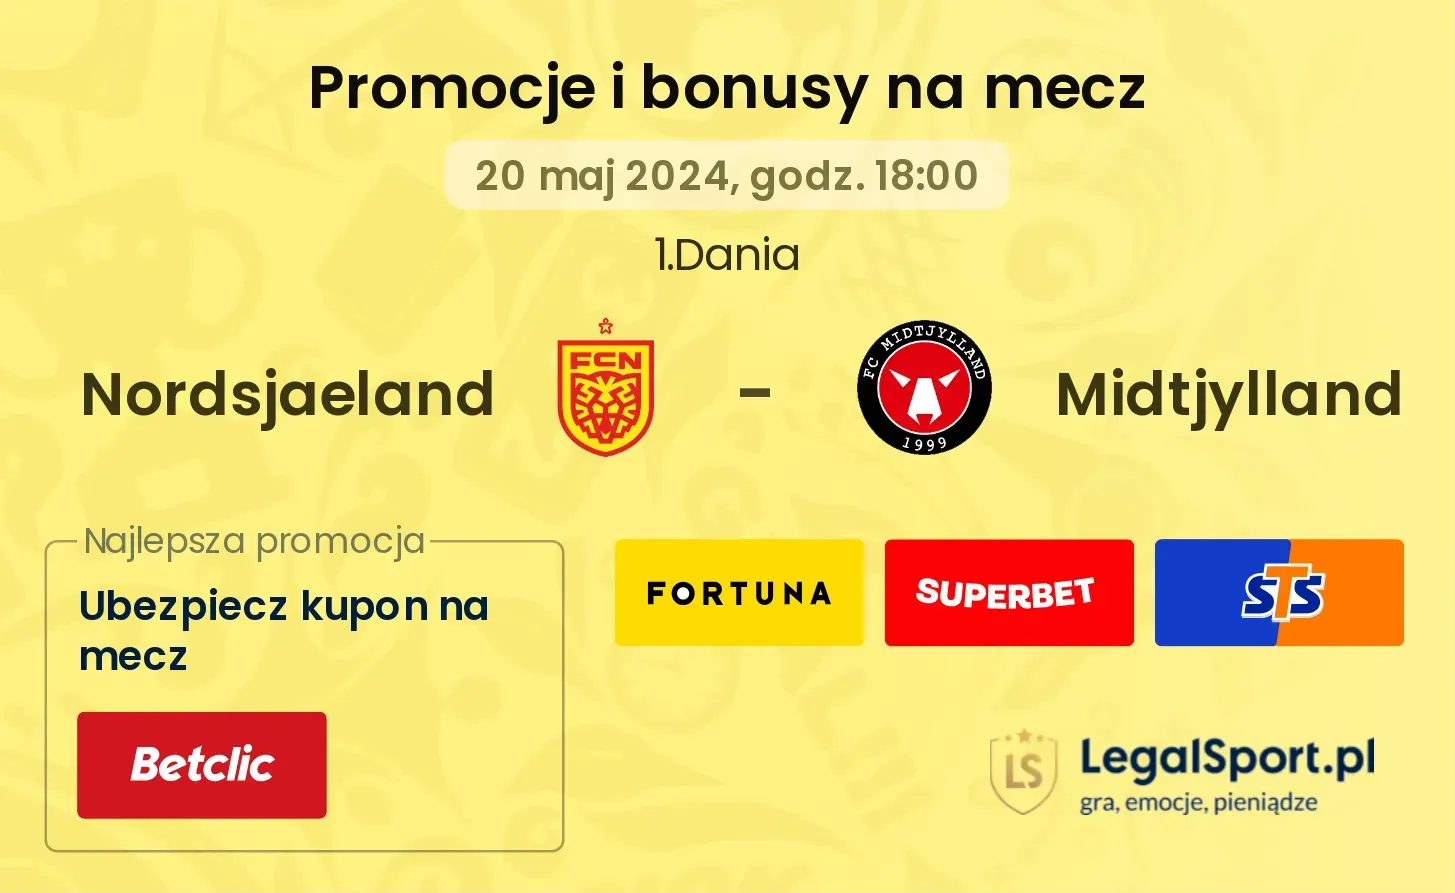 Nordsjaeland - Midtjylland bonusy i promocje (20.05, 18:00)